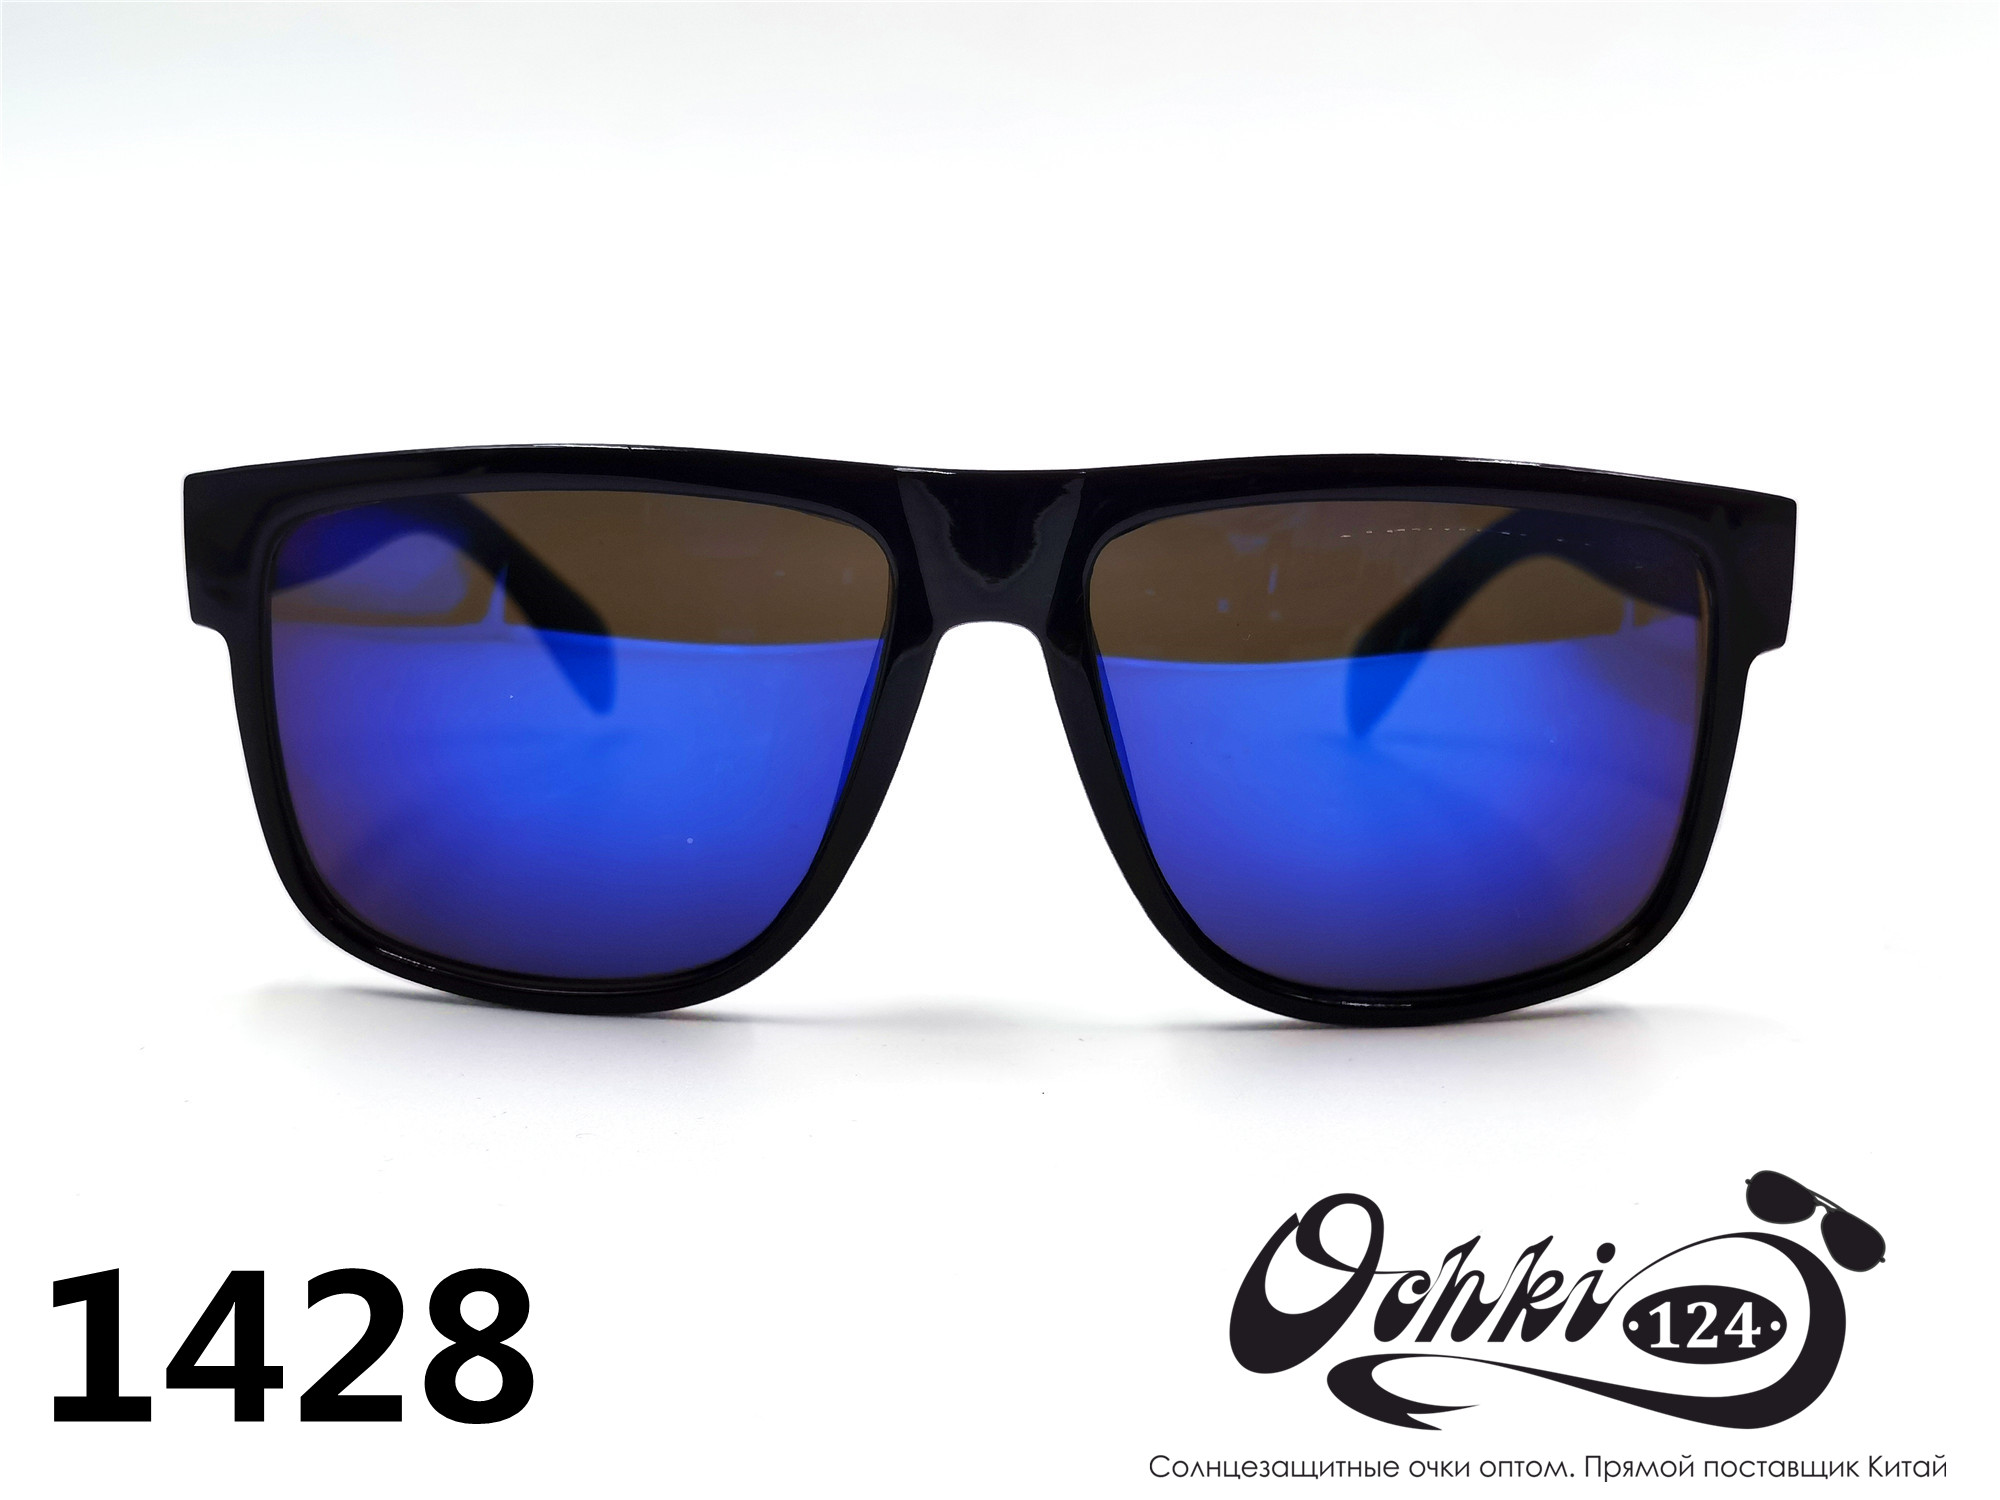  Солнцезащитные очки картинка 2022 Мужские Квадратные Materice 1428-6 